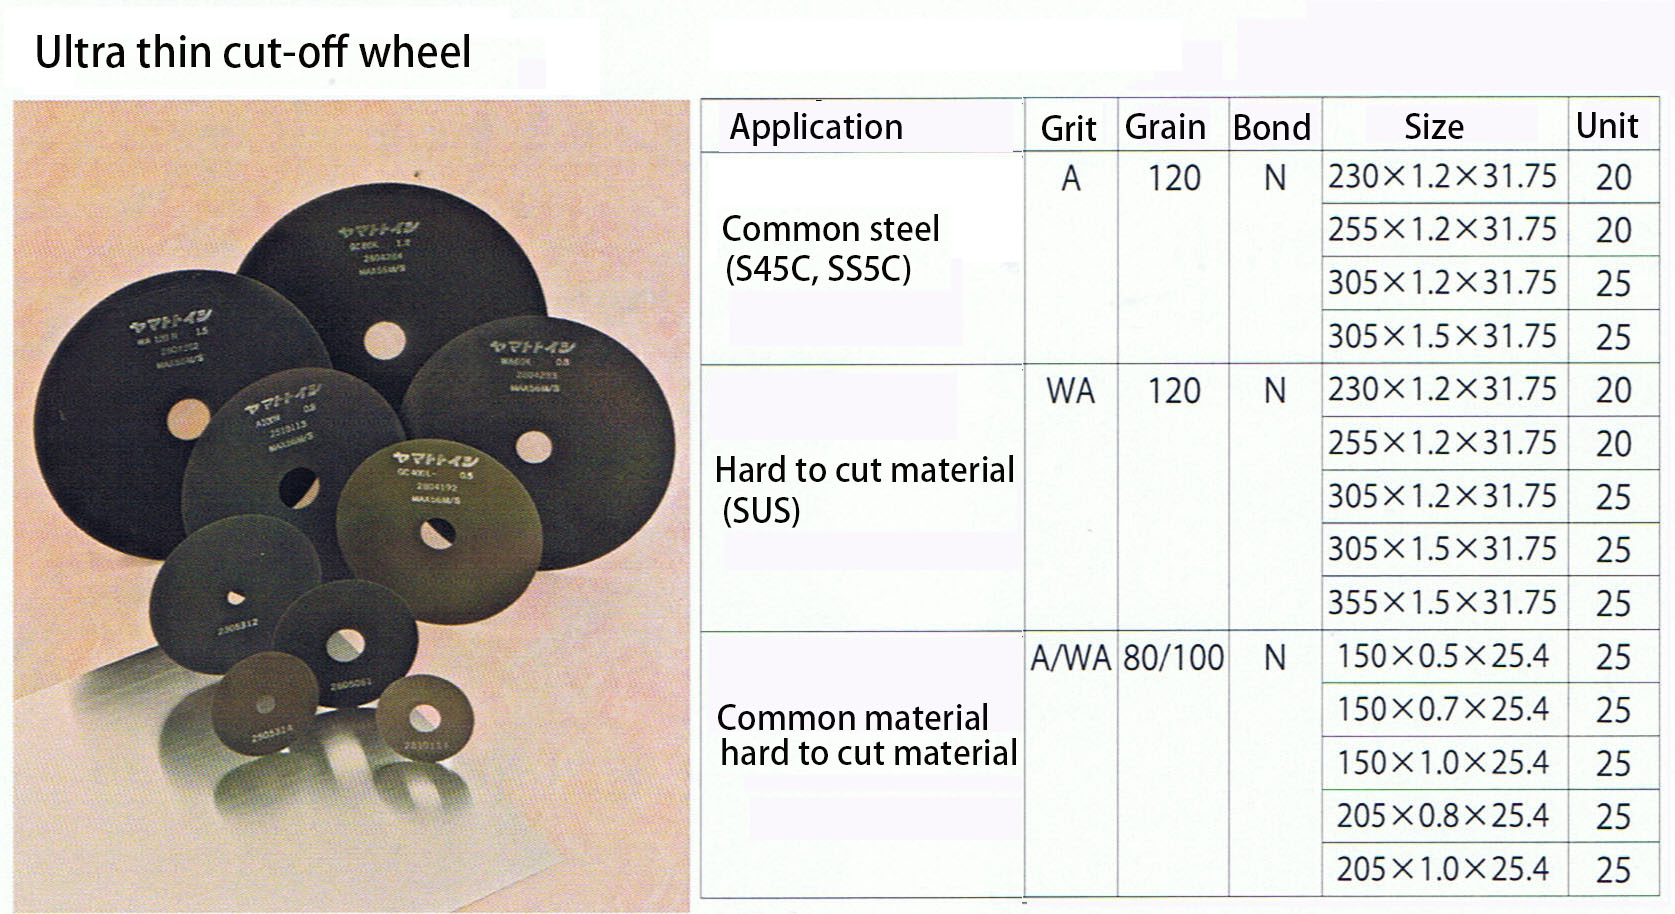 7. Ultra thin cut-off wheel